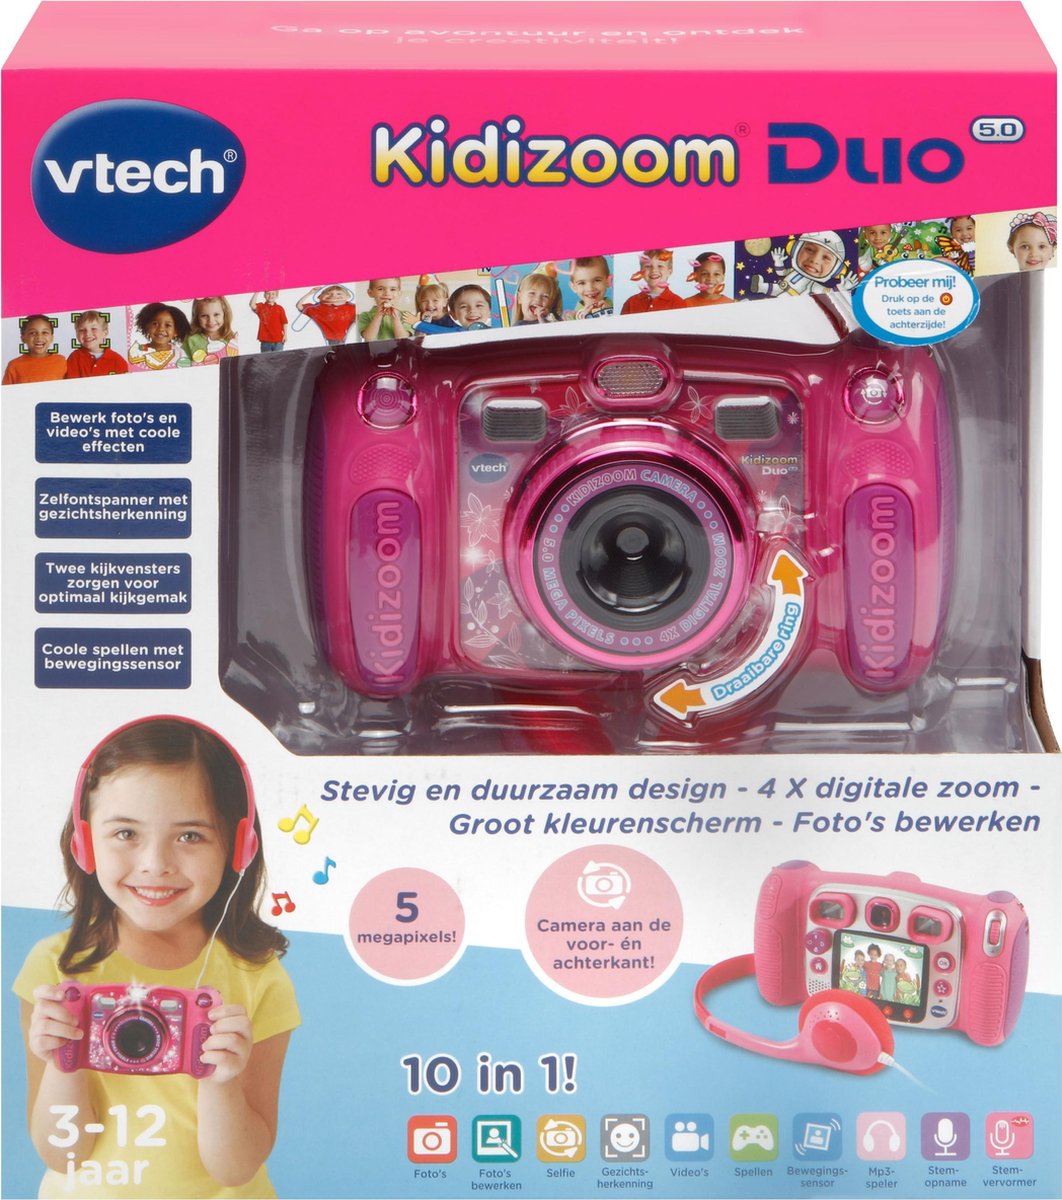 Ontwijken Klokje controller VTech KidiZoom Duo 5.0 Megapixel Roze - Kindercamera | bol.com